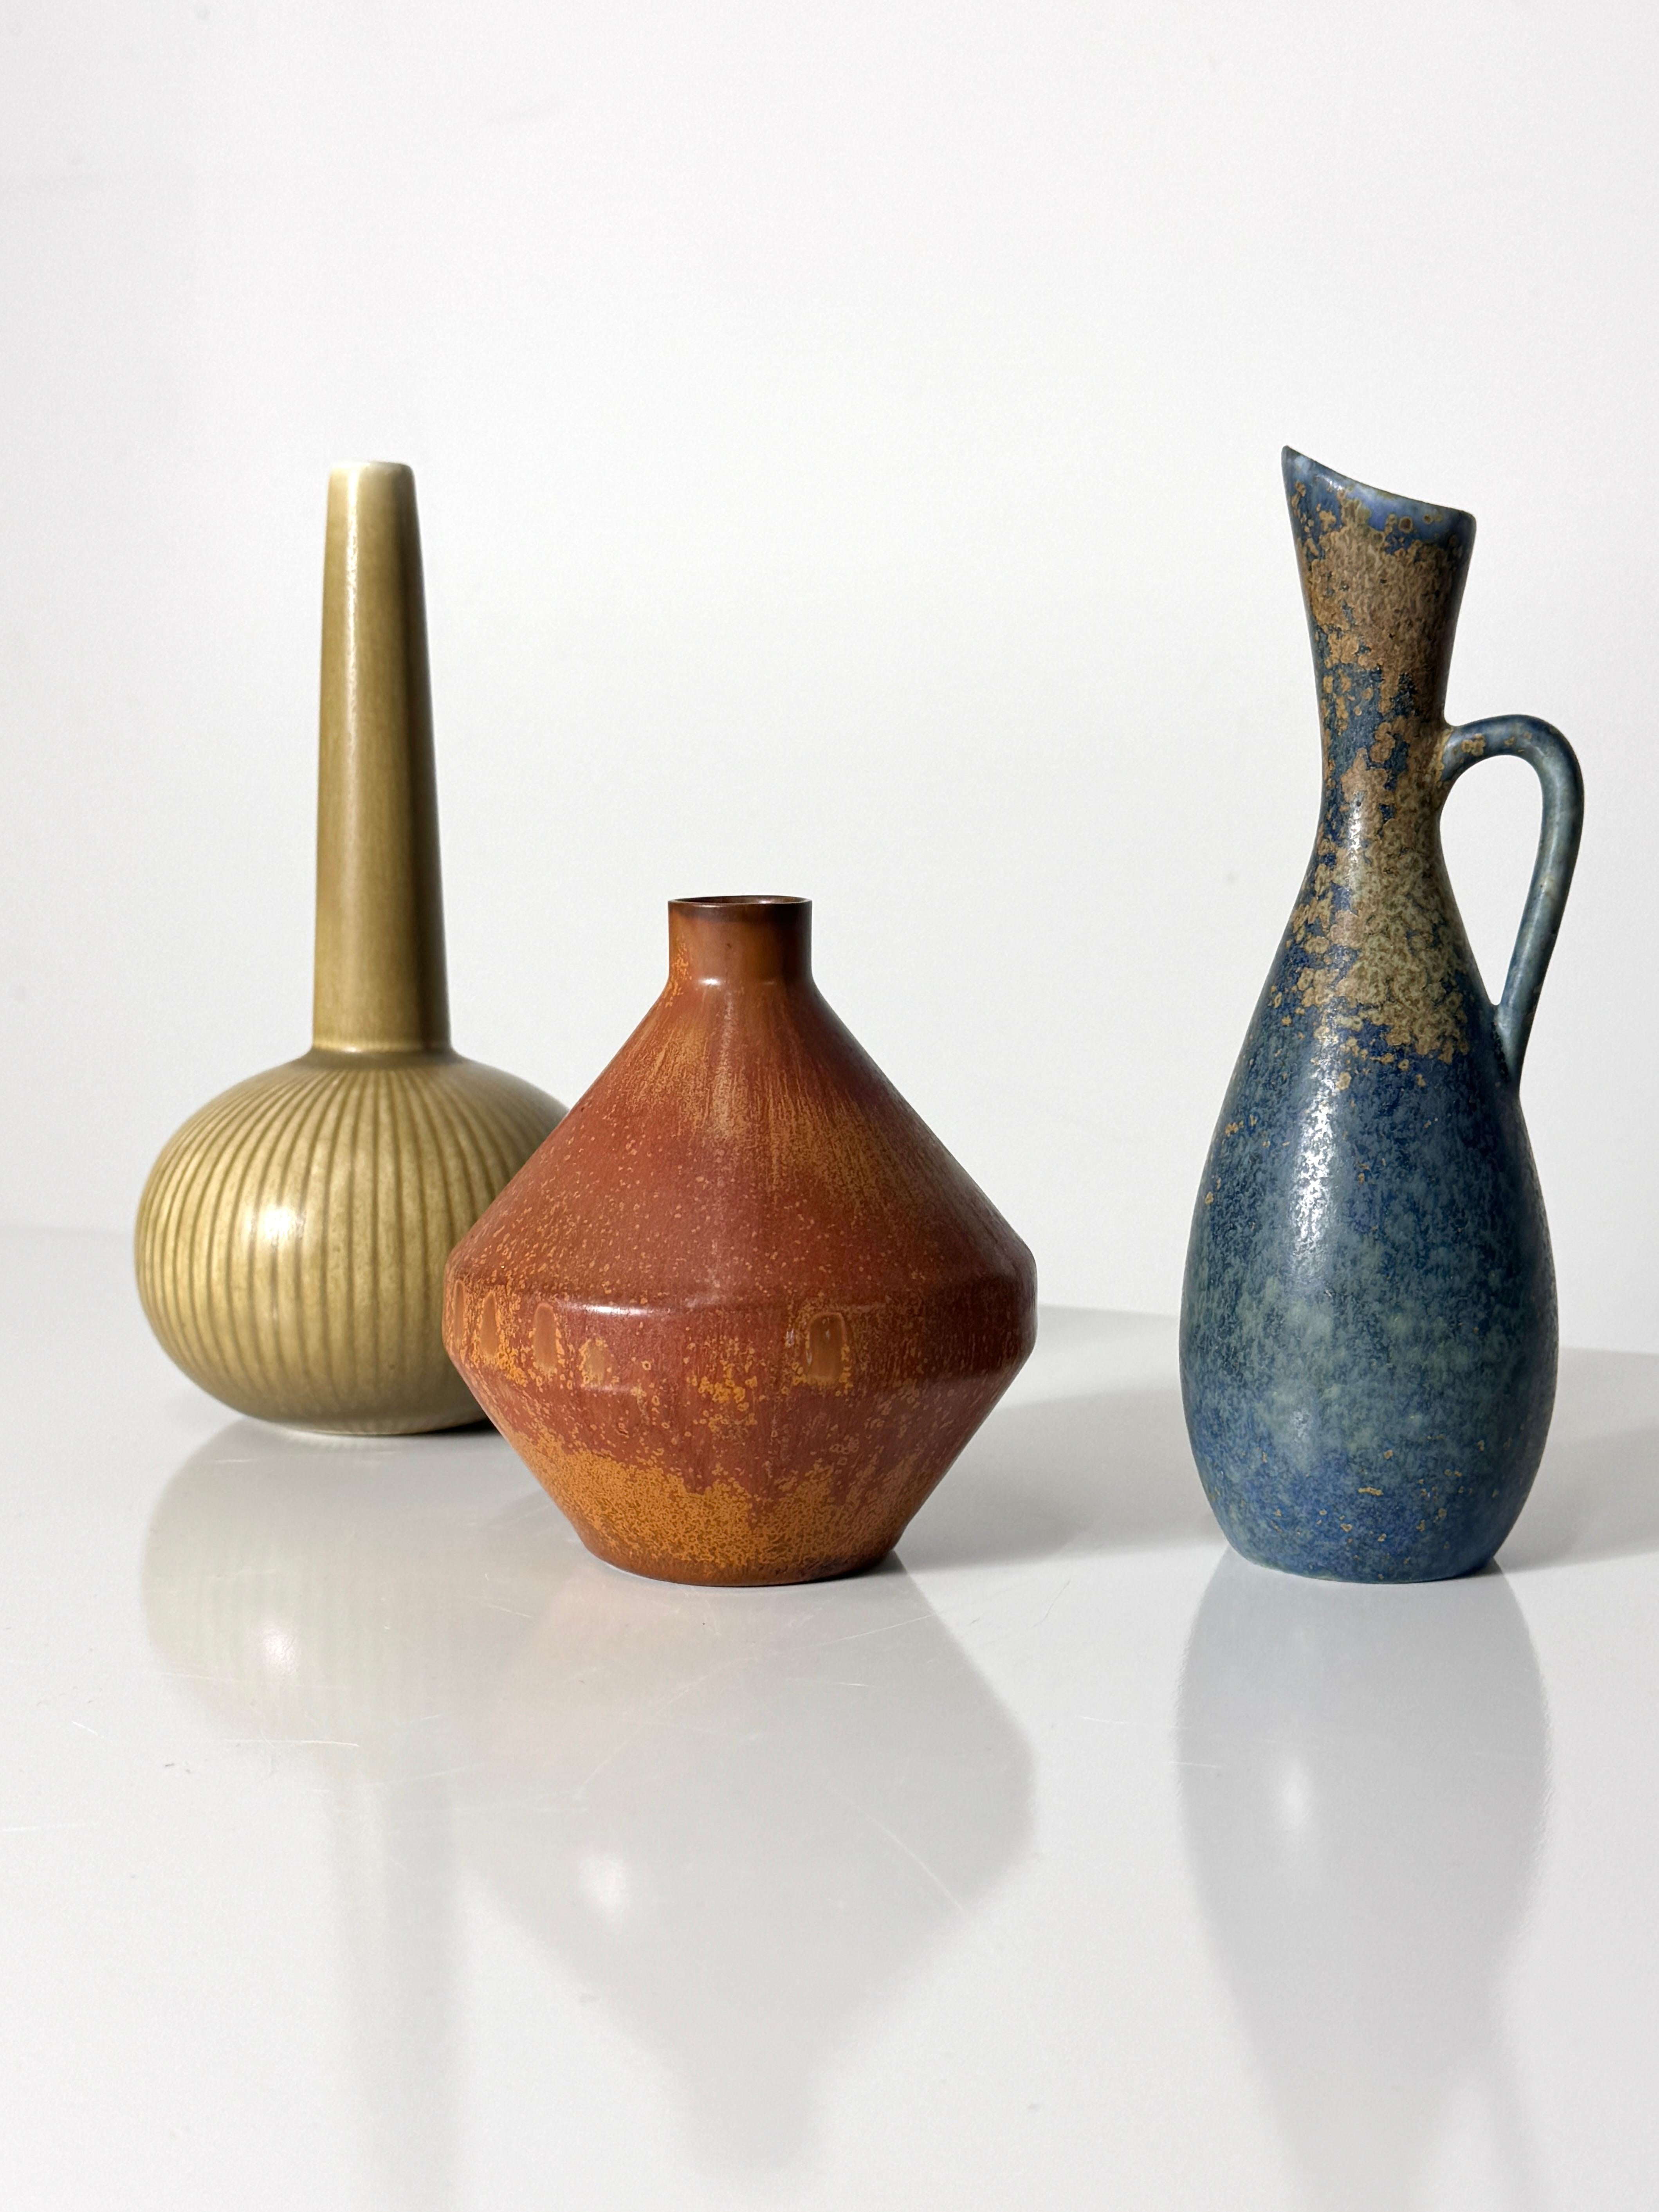 Hervorragende Gruppe von drei Keramikgefäßen von Rörstrand Sweden 
Circa 1950er Jahre

Vase in Form eines Kruges SYE mit gedämpfter blauer Glasur von Carl-Harry Stalhane
4 Zoll Durchmesser  4,5 Zoll Höhe

Knospenvase SOU mit Rostglasur von